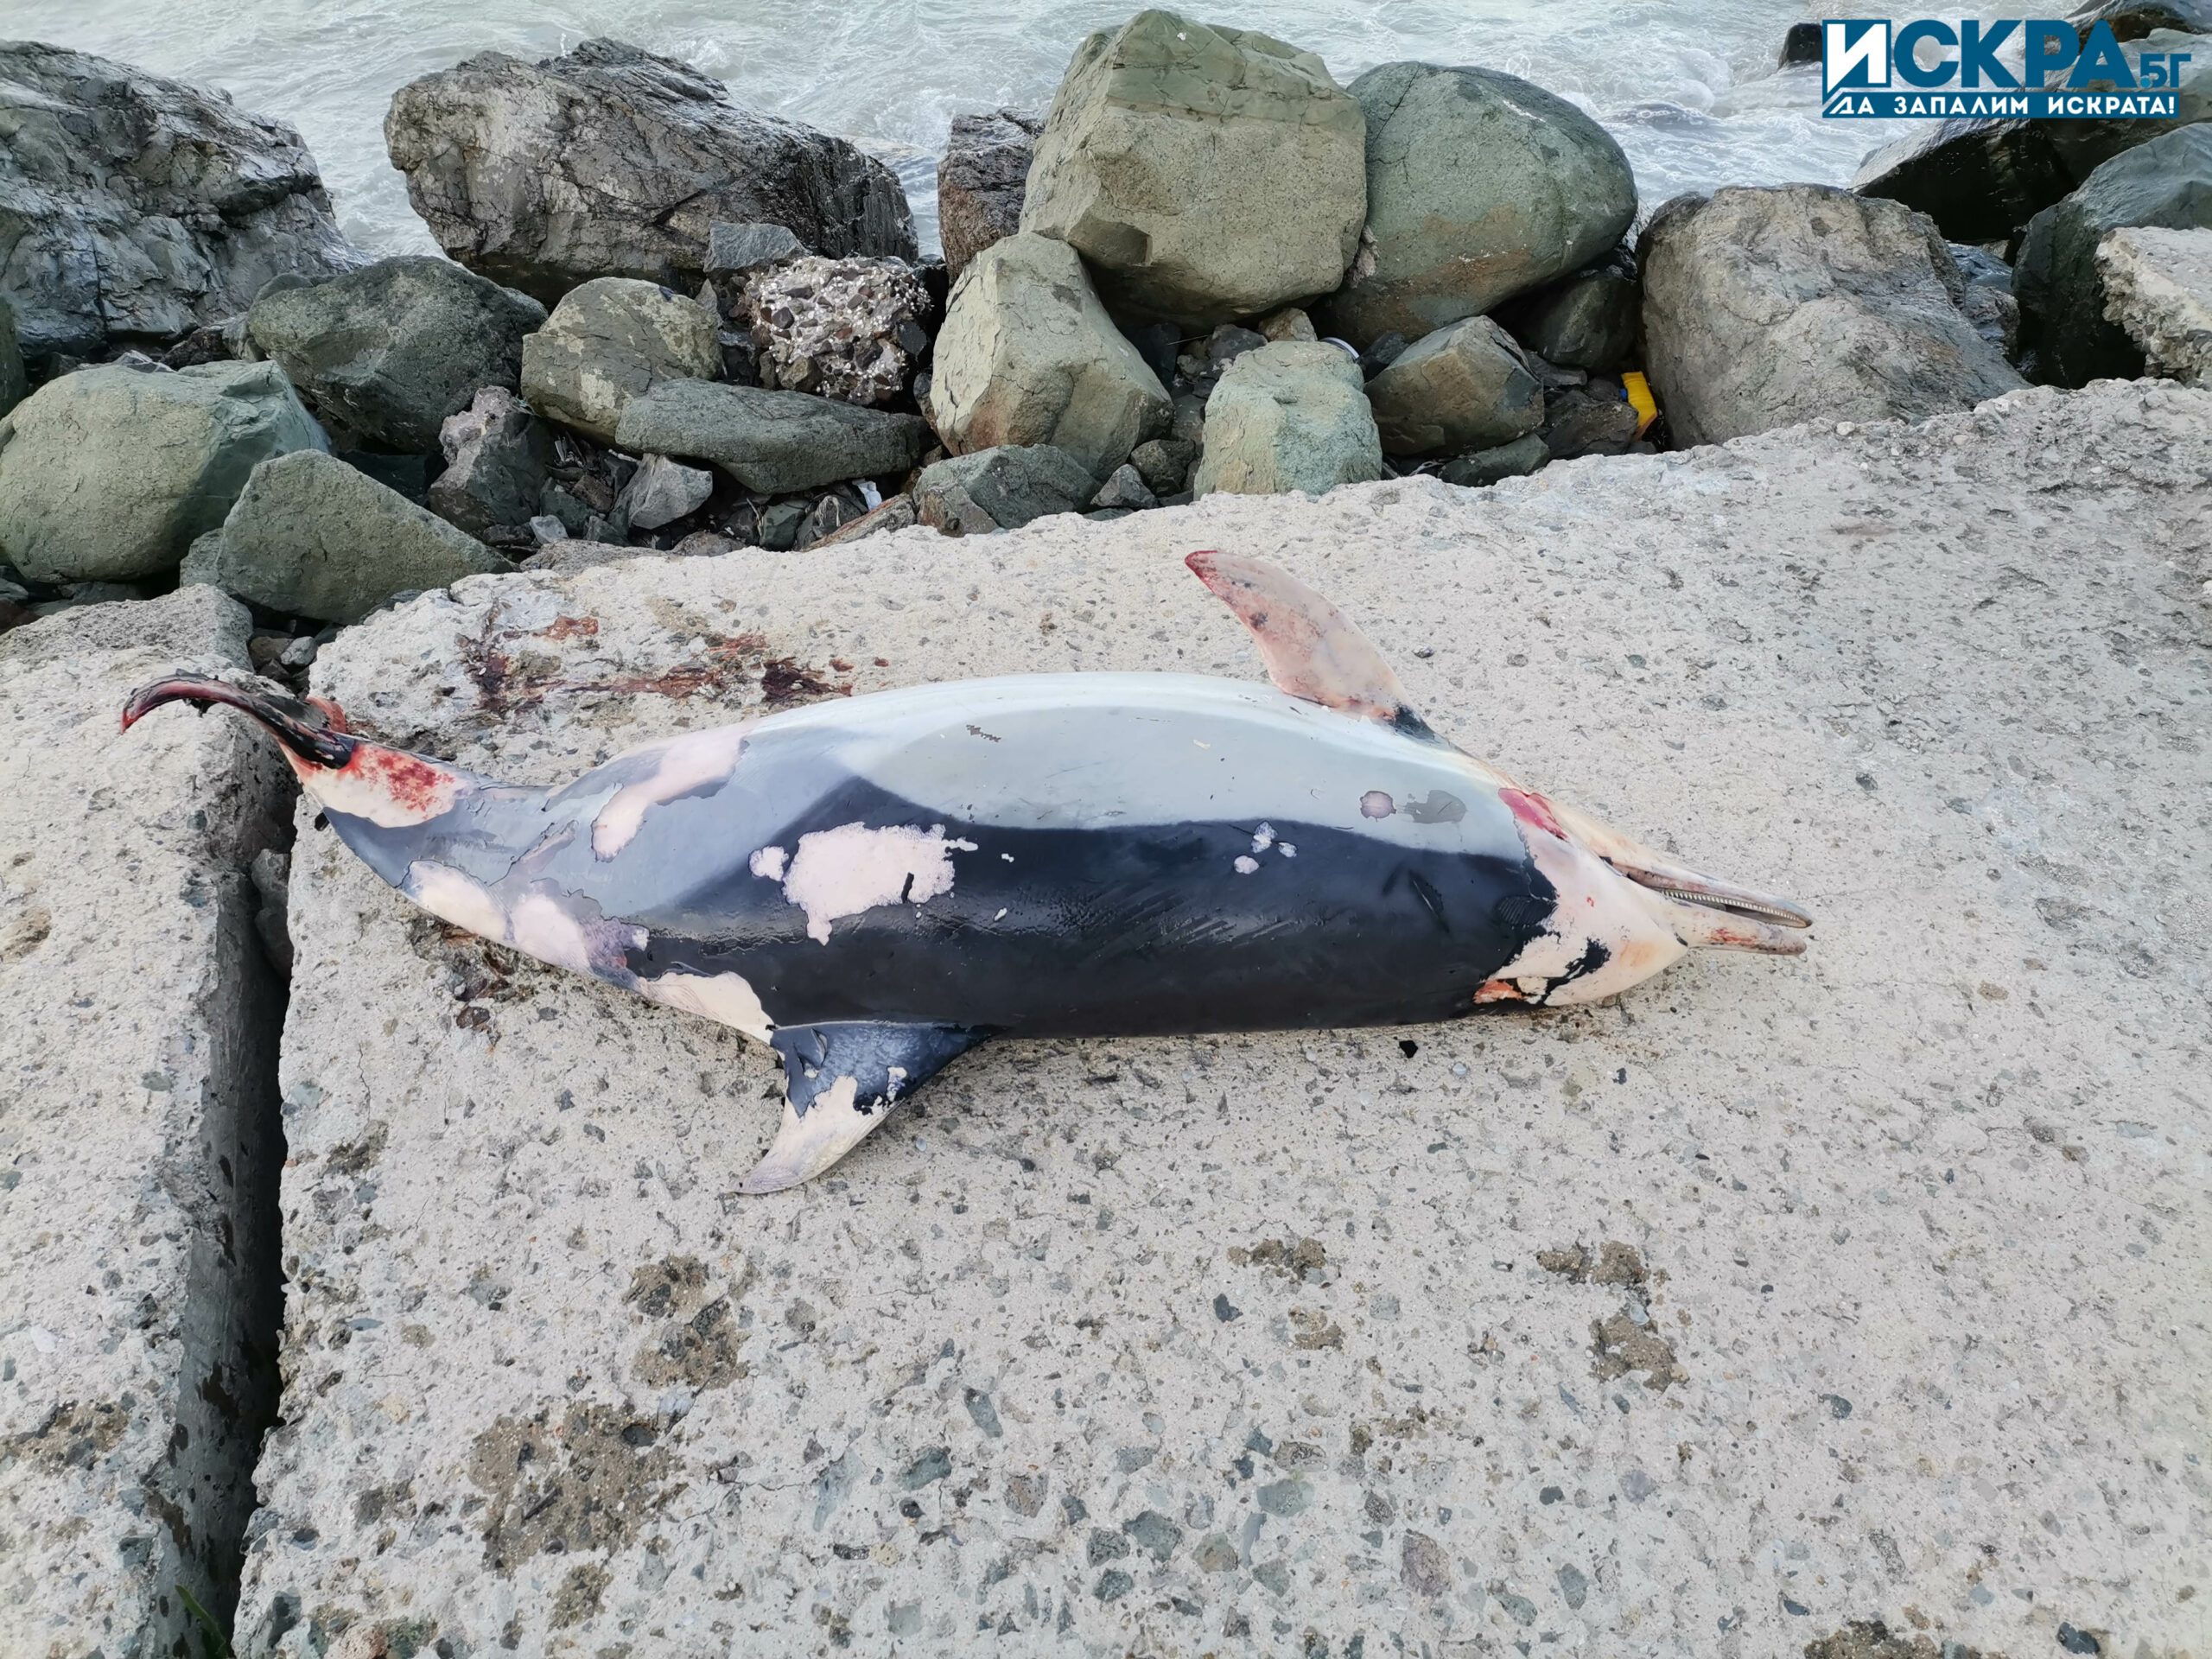 Делфин Снимка Искра бг
Мъртъв делфин е изхвърлило морето днес в Поморие Морският